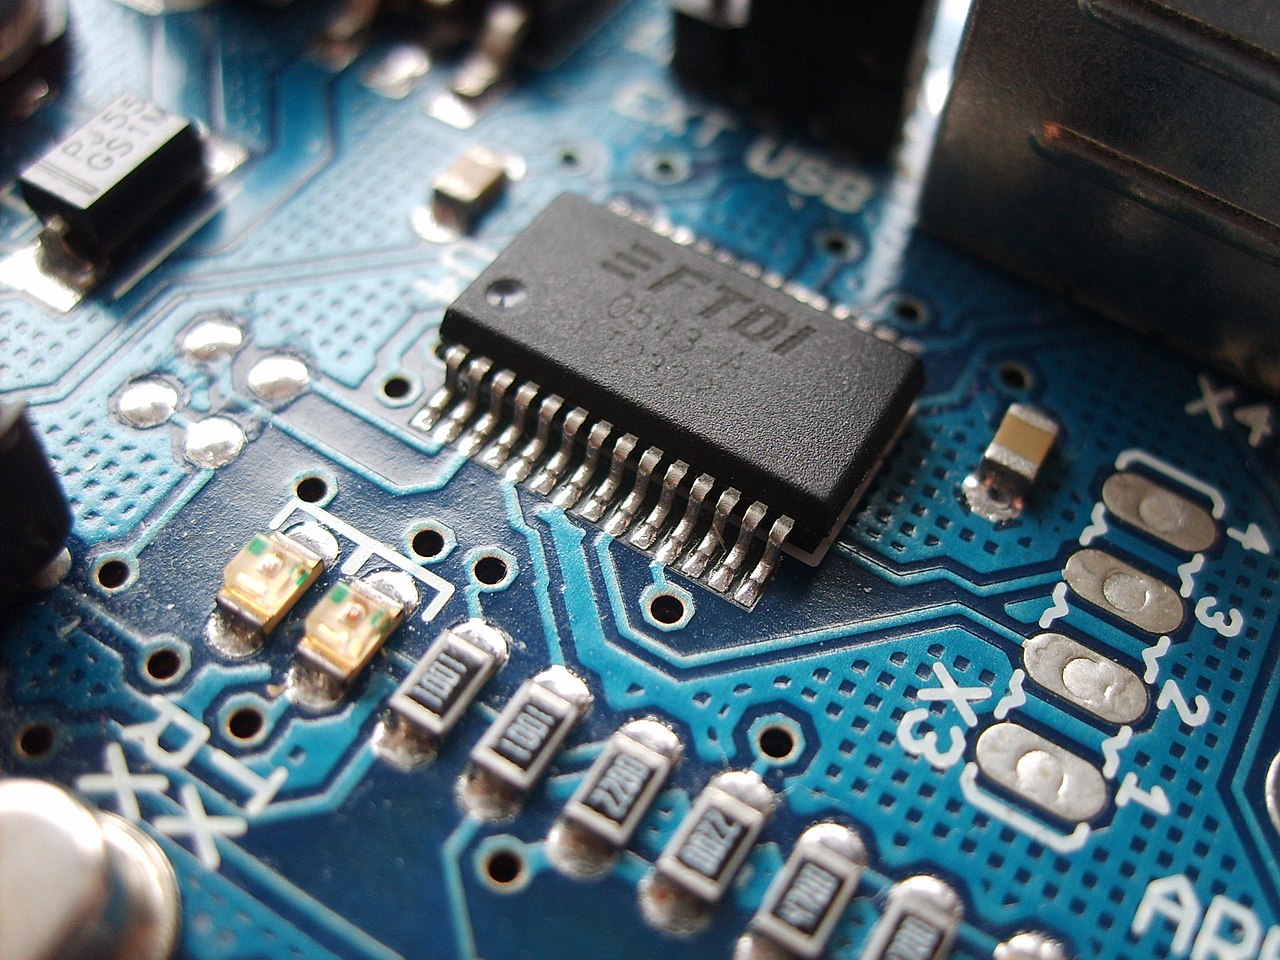 Elektronika; grafika na potrzeby zadania, zrodlo: https://pl.wikipedia.org/wiki/Elektronika#/media/Plik:Arduino_ftdi_chip-1.jpg